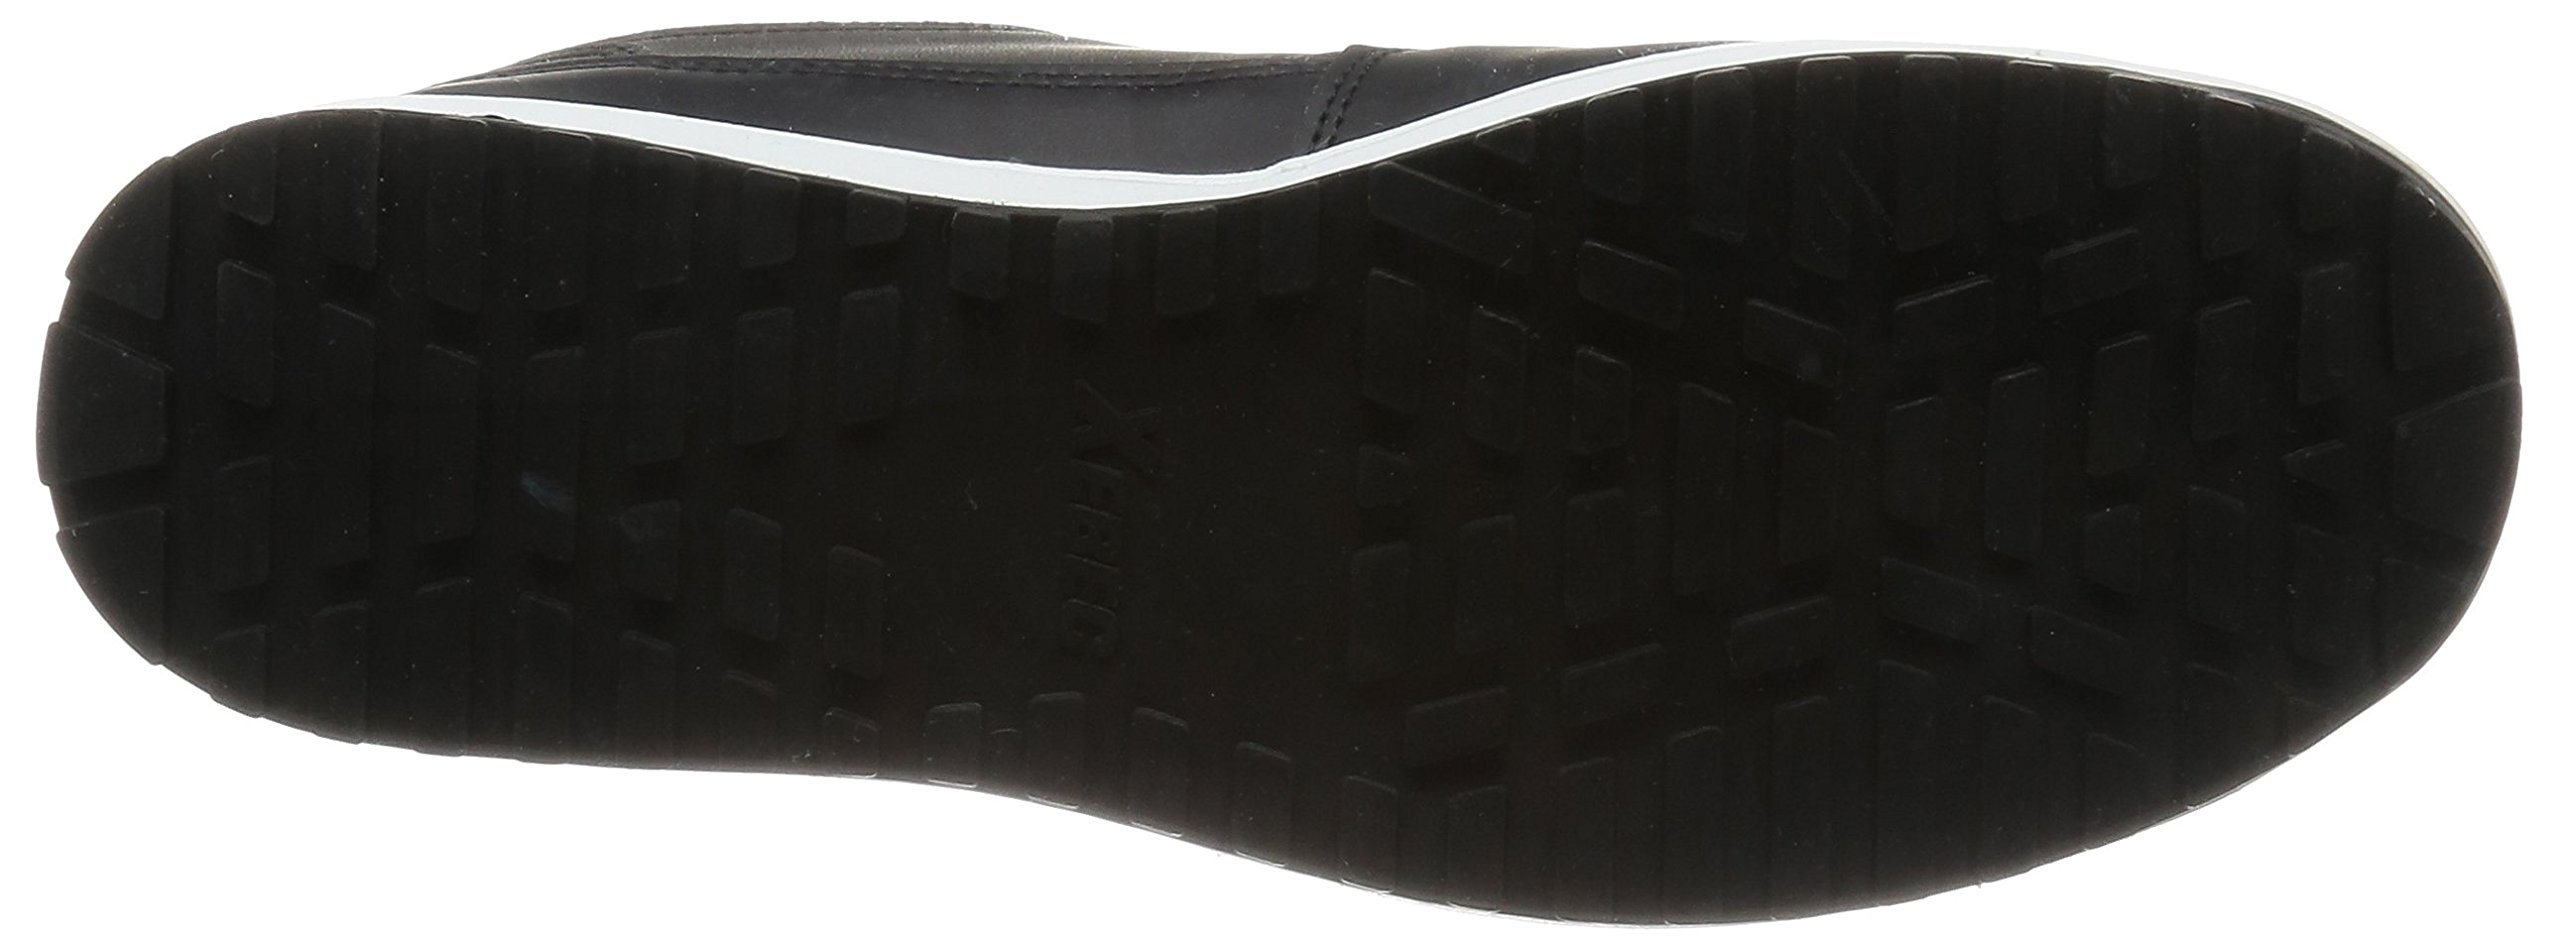 XEBEC(ジーベック) 安全靴 85118 サイドファスナー 耐滑セーフティシューズ メンズ